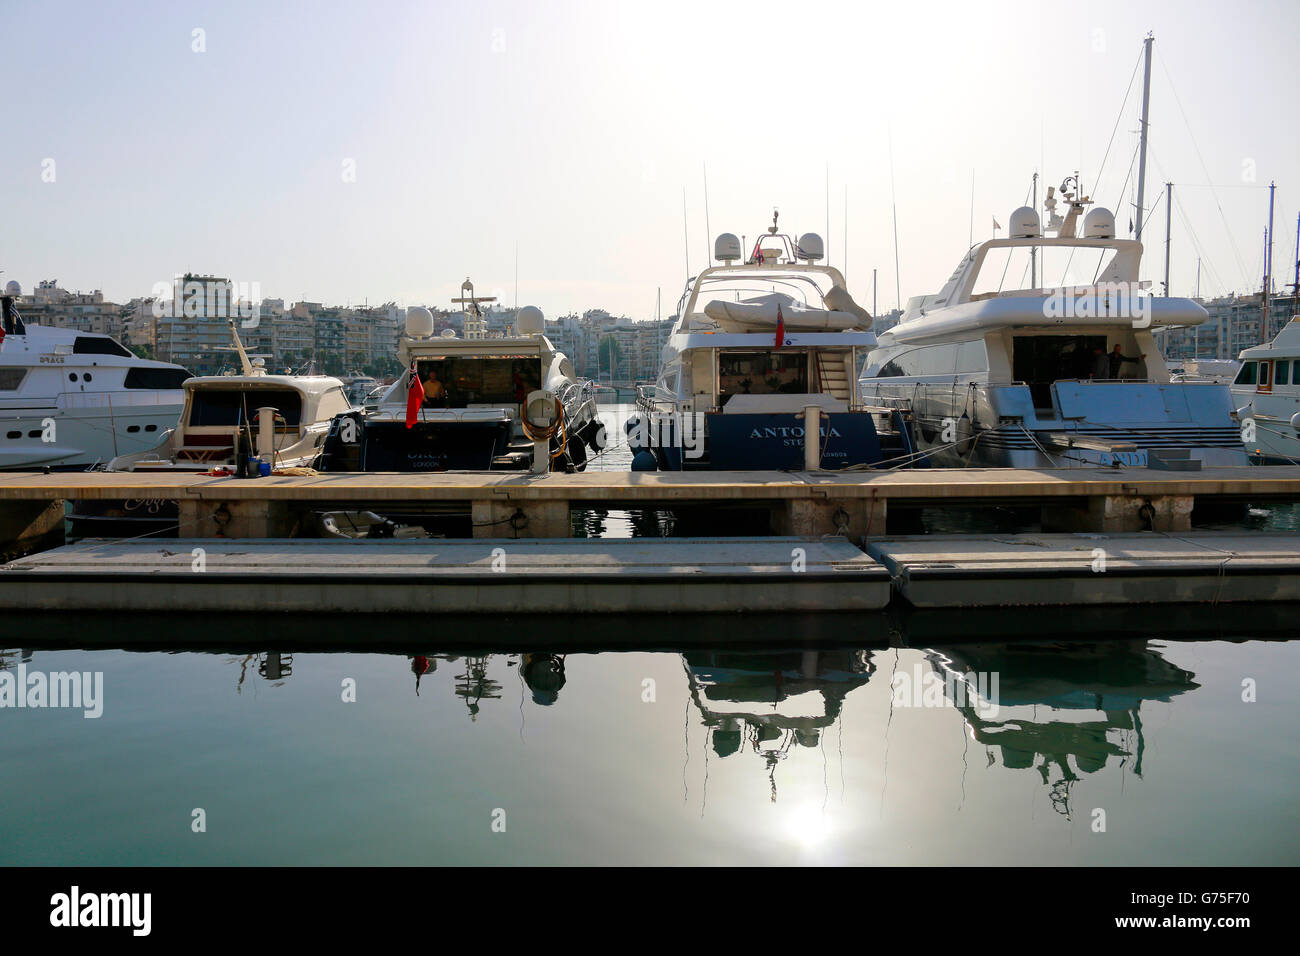 Yachthafen, Piraeus, Griechenland. Stock Photo